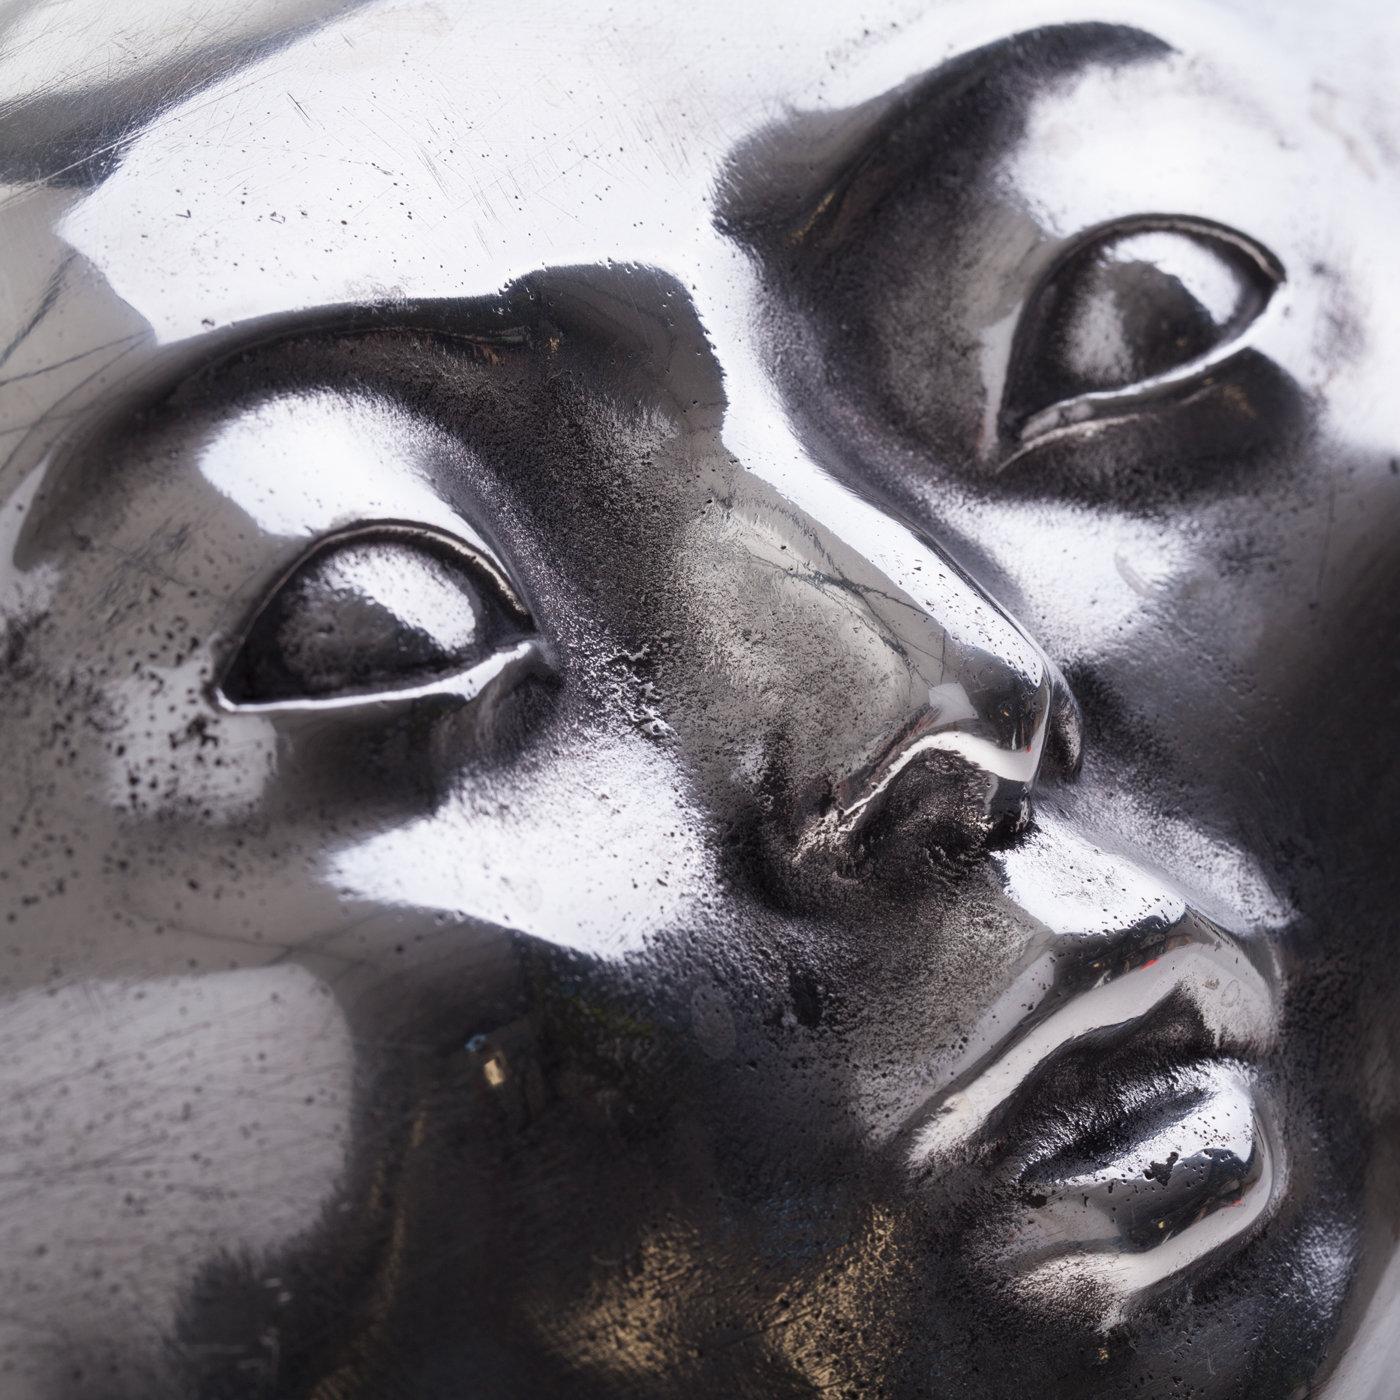 Symbolisant un remède aux maux de la société, cette sculpture typiquement surréaliste de l'artiste florentin Leonardo Bossio représente une grande pilule à visage humain. Coulée à la main en aluminium et brossée à un haut degré de polissage.